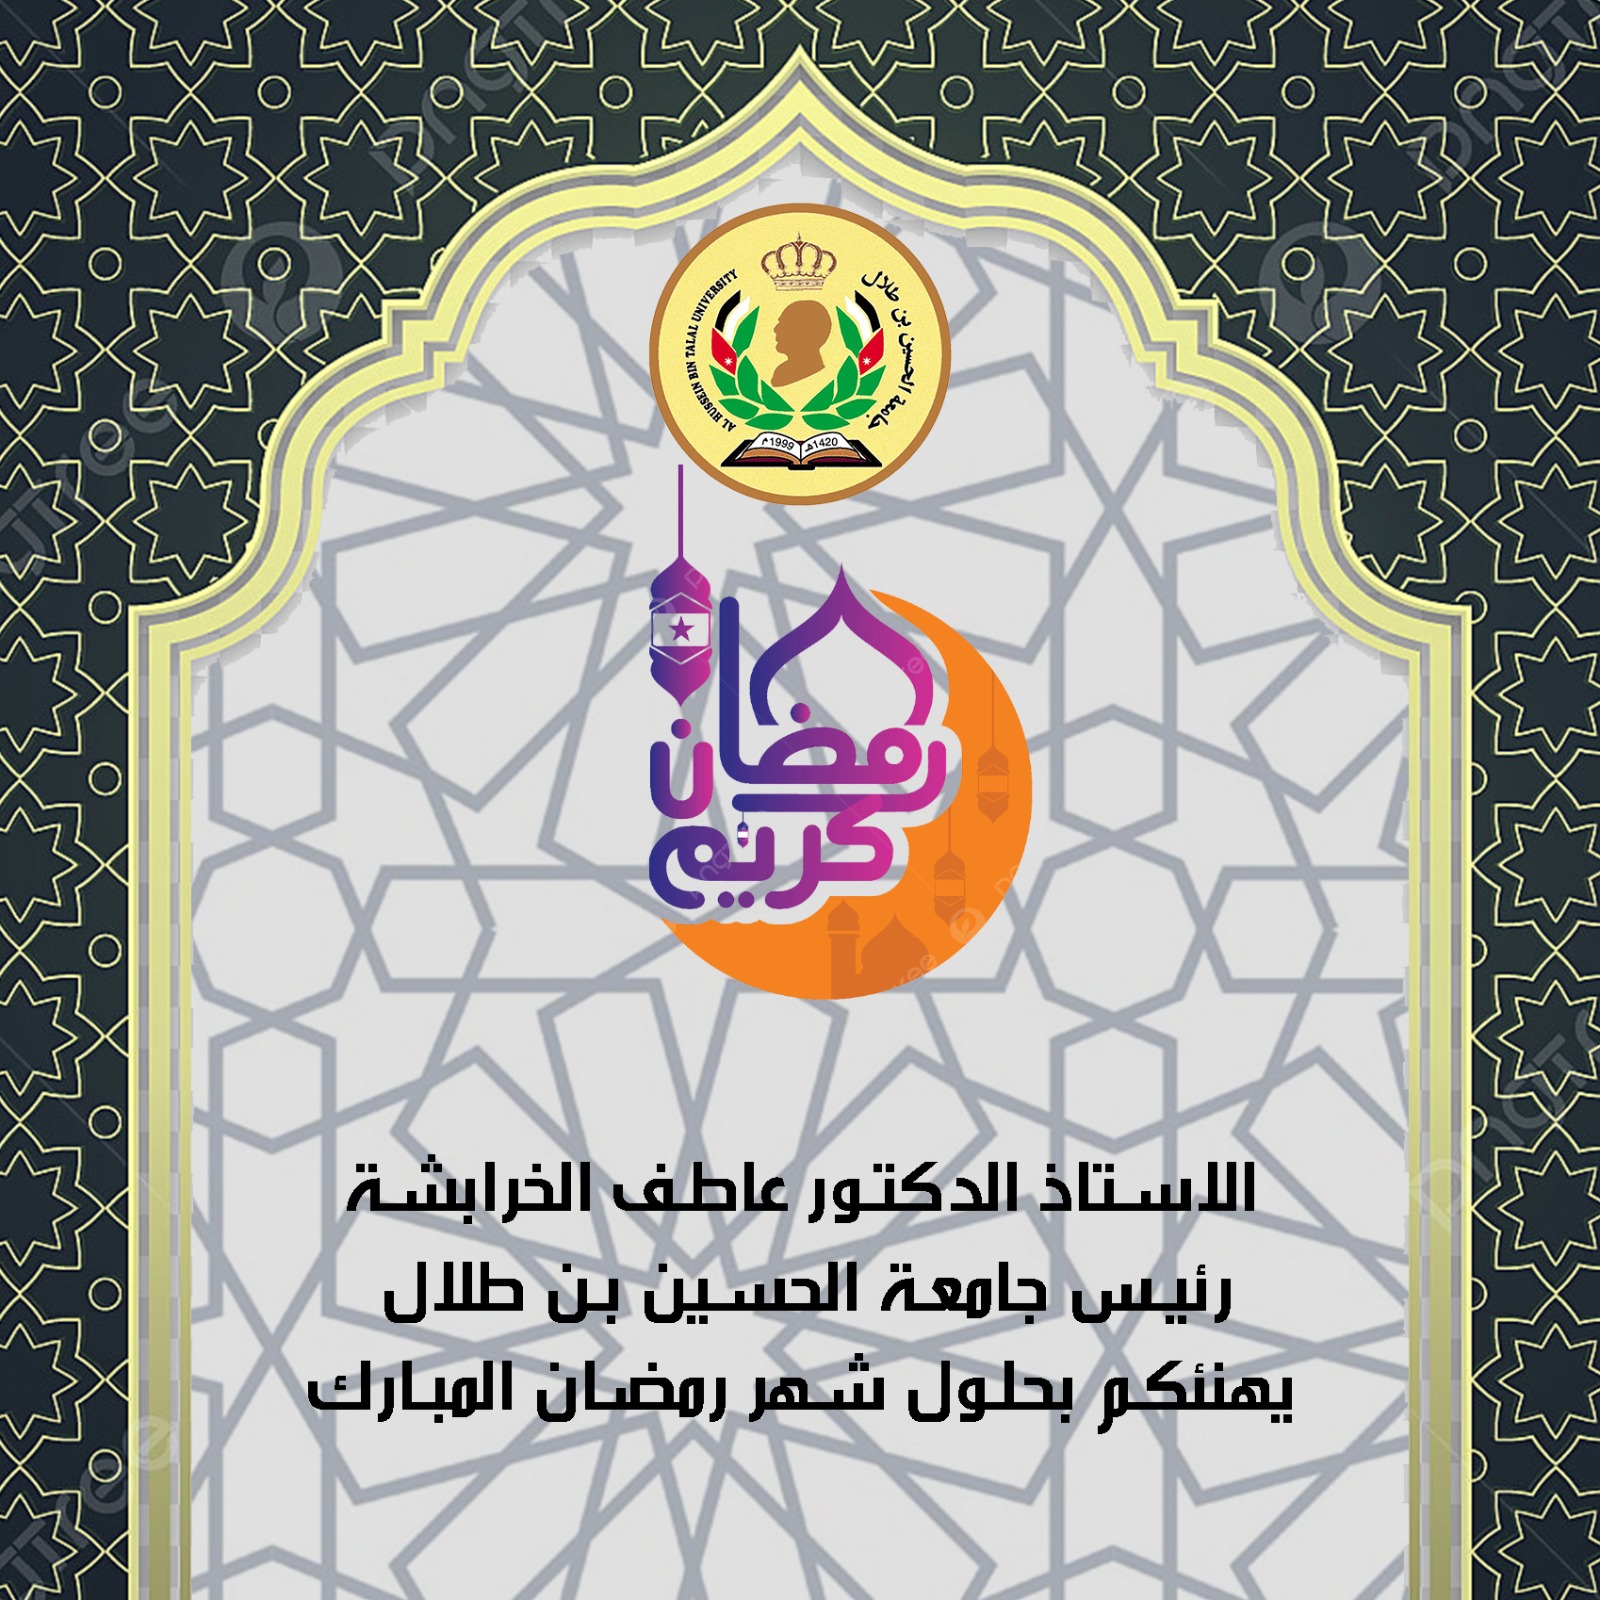  جامعة الحسين بن طلال تهنئ جلالة الملك بمناسبة حلول شهر رمضان المبارك.